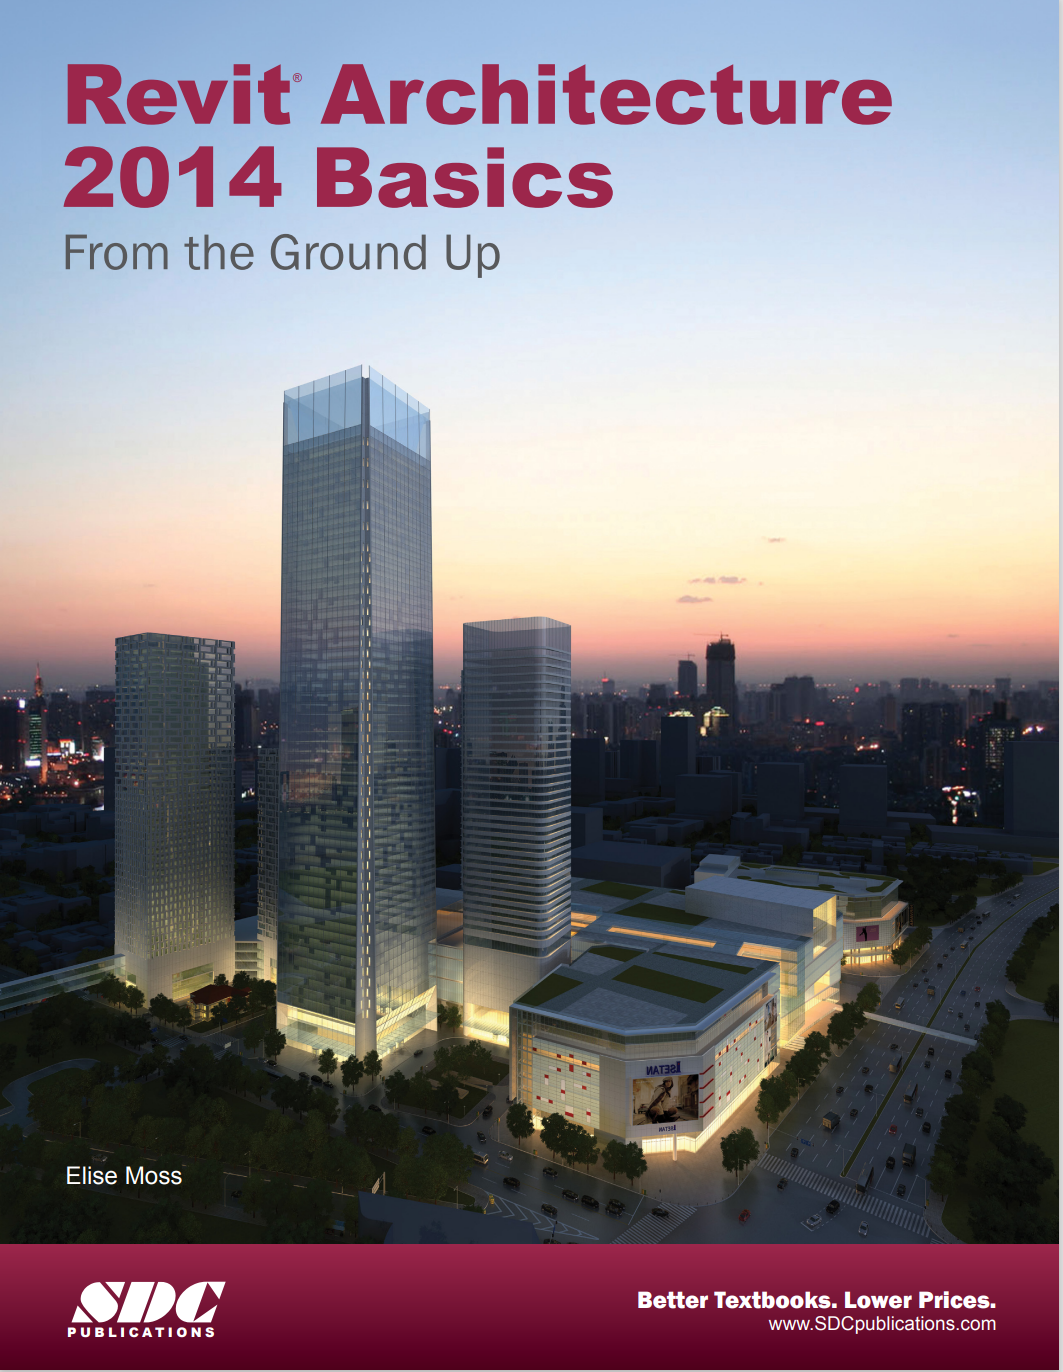 Revit Architecture 2014 Basics - SDC Publications